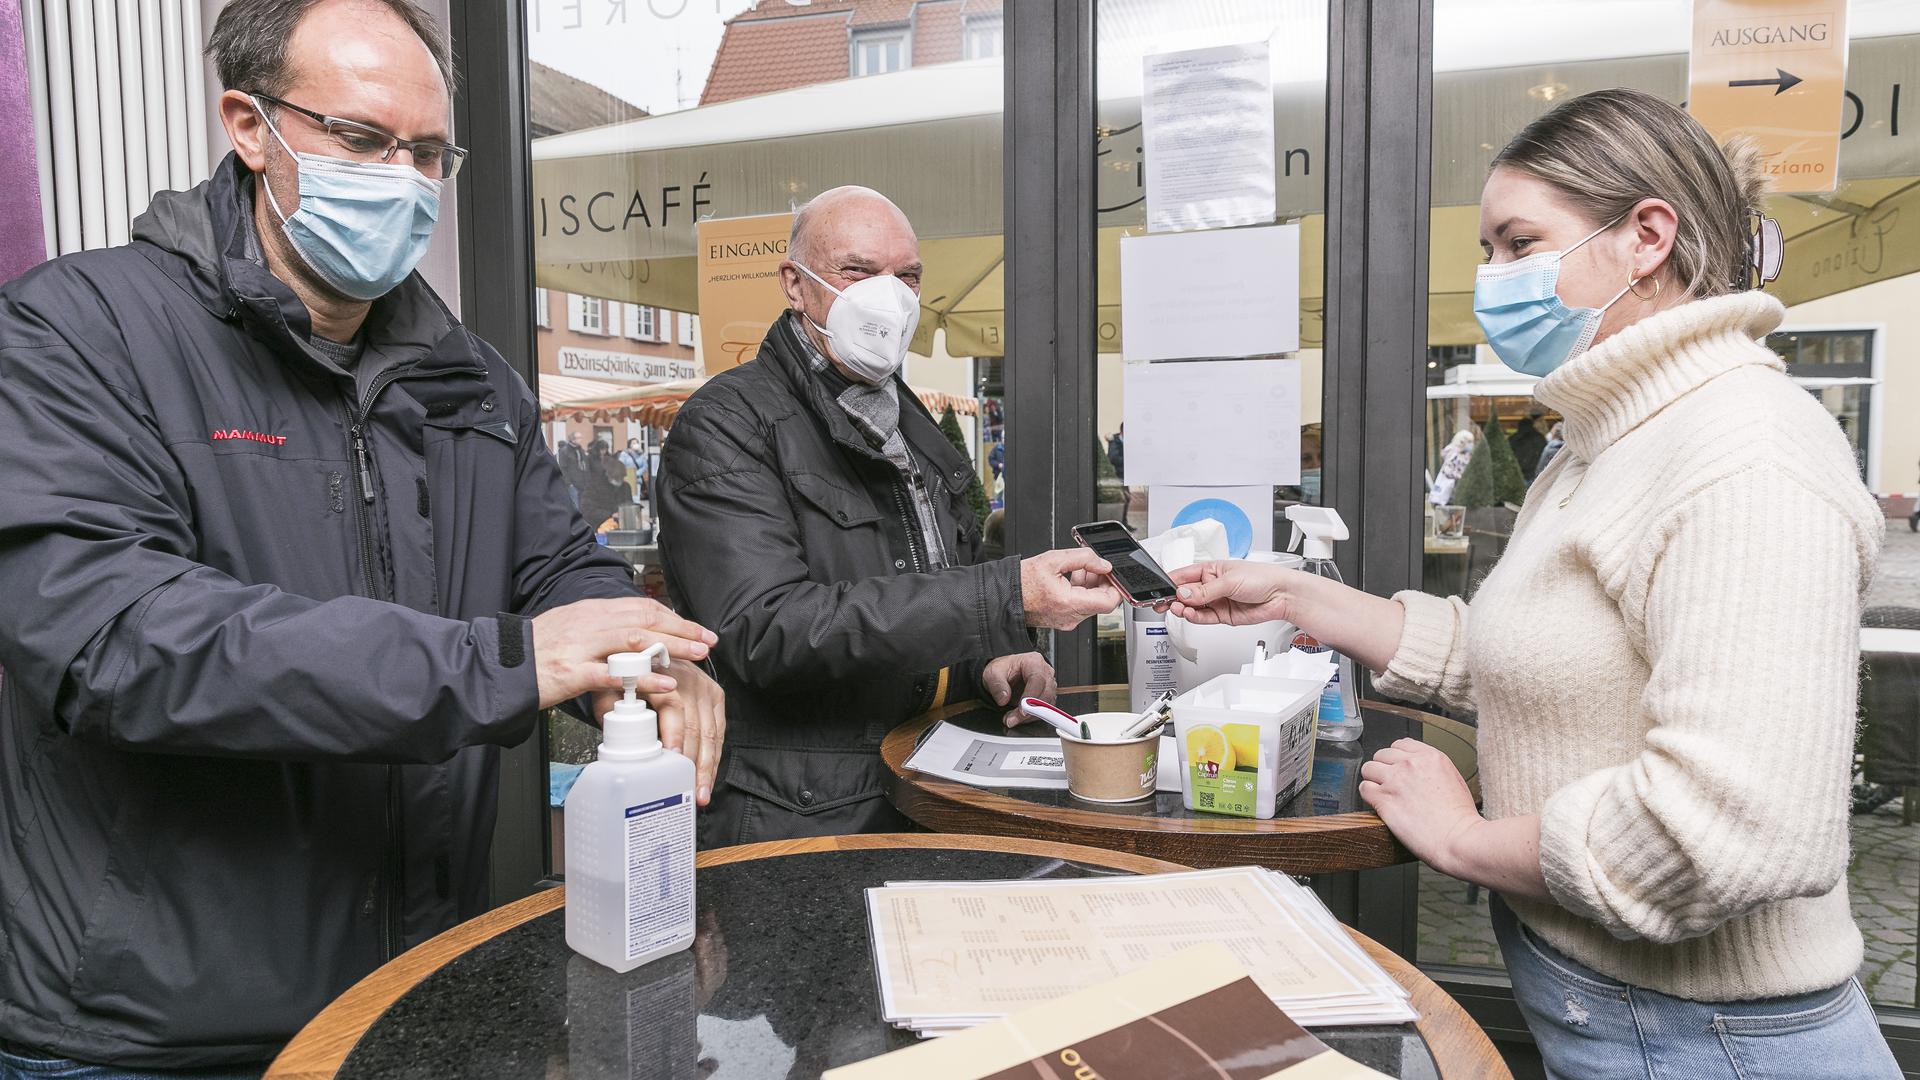 Impfausweis und Händedesinfektion: Michael und Willi Rutschmann (von links) werden am Eingang des Eiscafé Tiziano von Filialleiterin Karina Kandora kontrolliert.